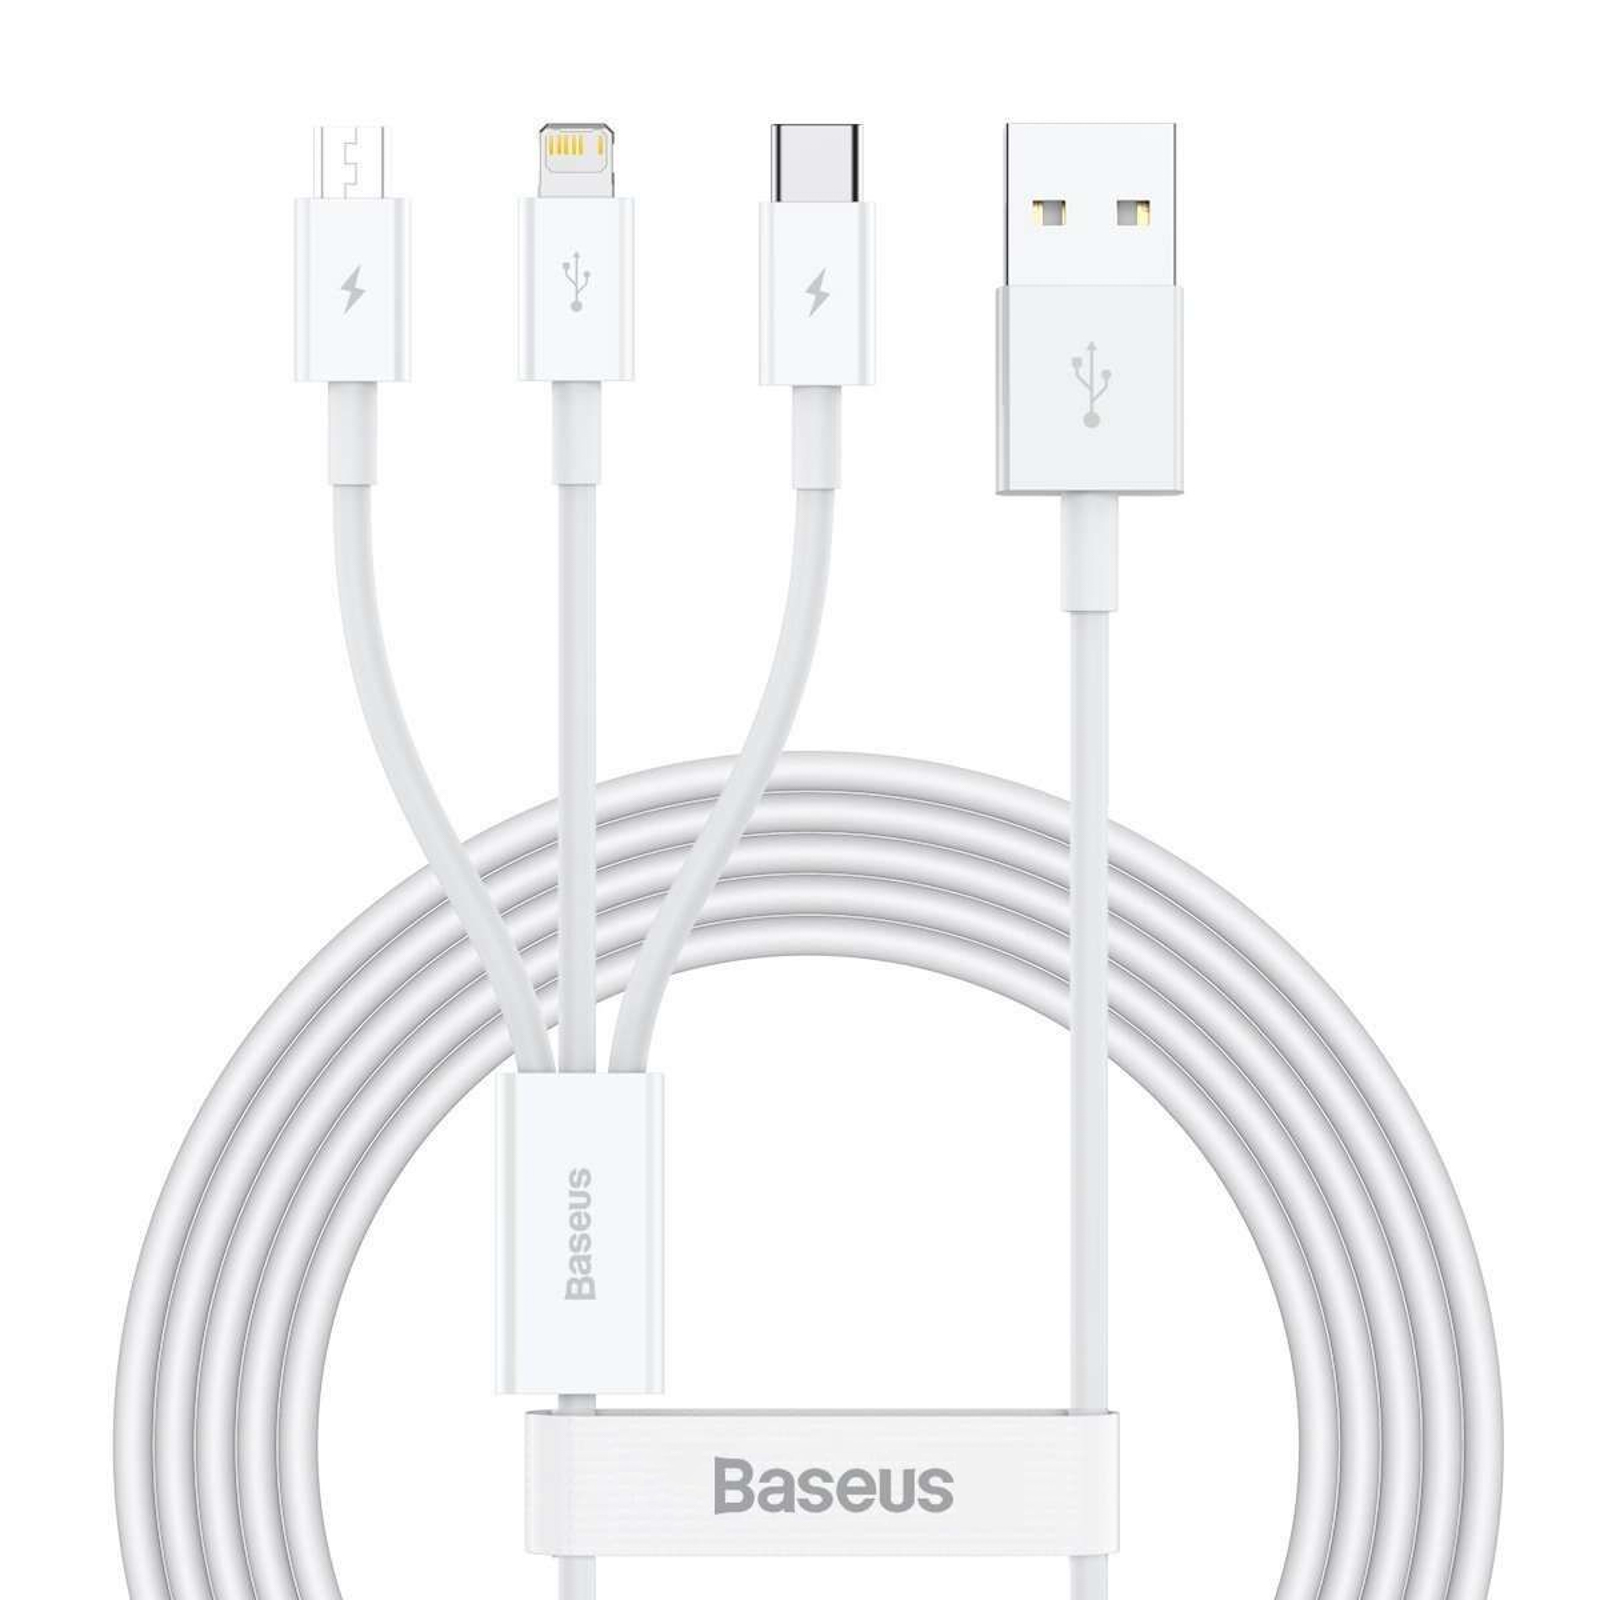 BASEUS 3in1 USB Kabel Ladekabel